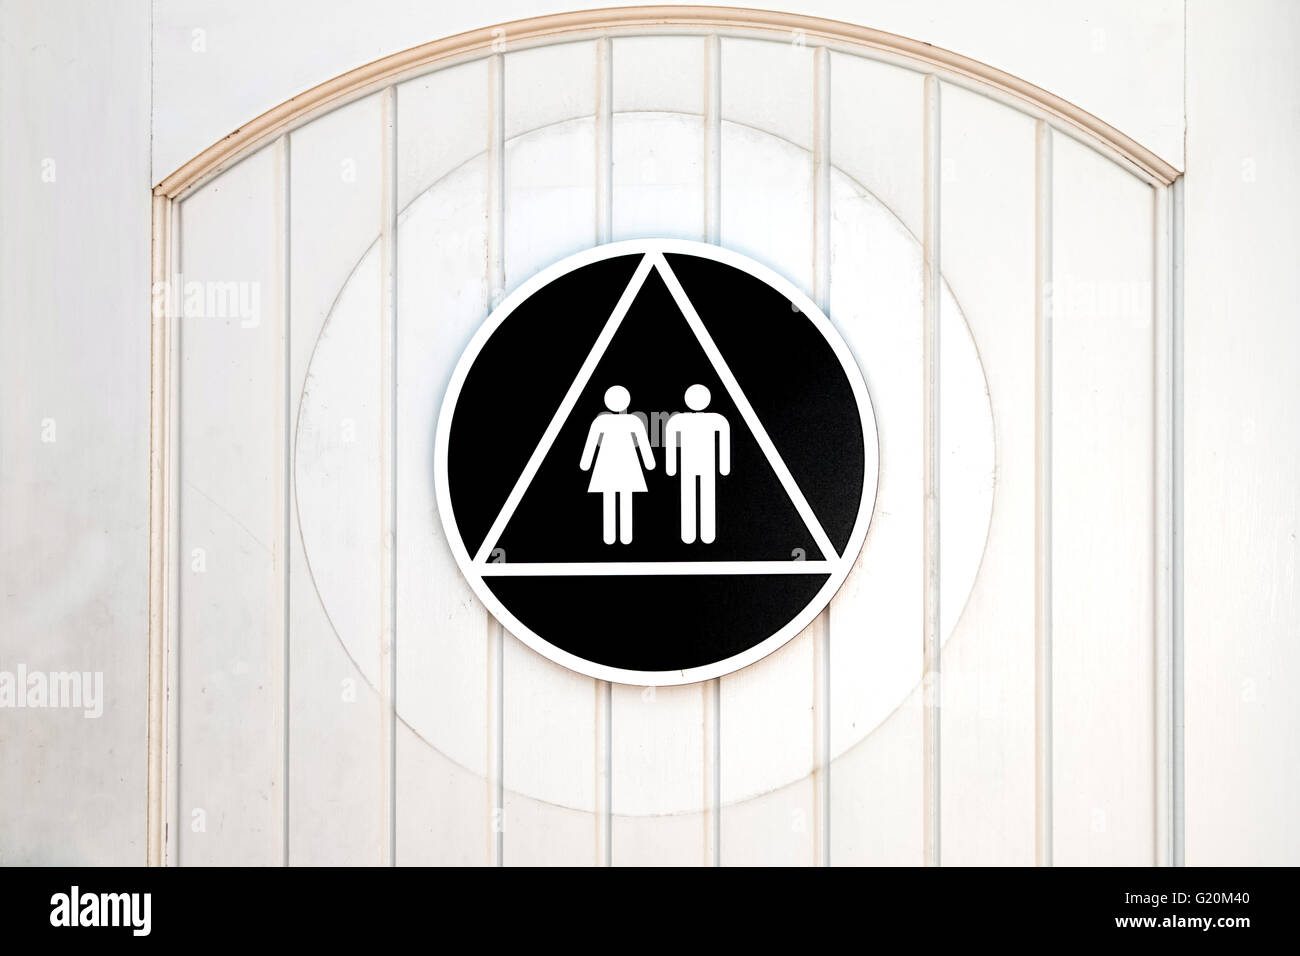 Two gender bathroom sign on door. Stock Photo